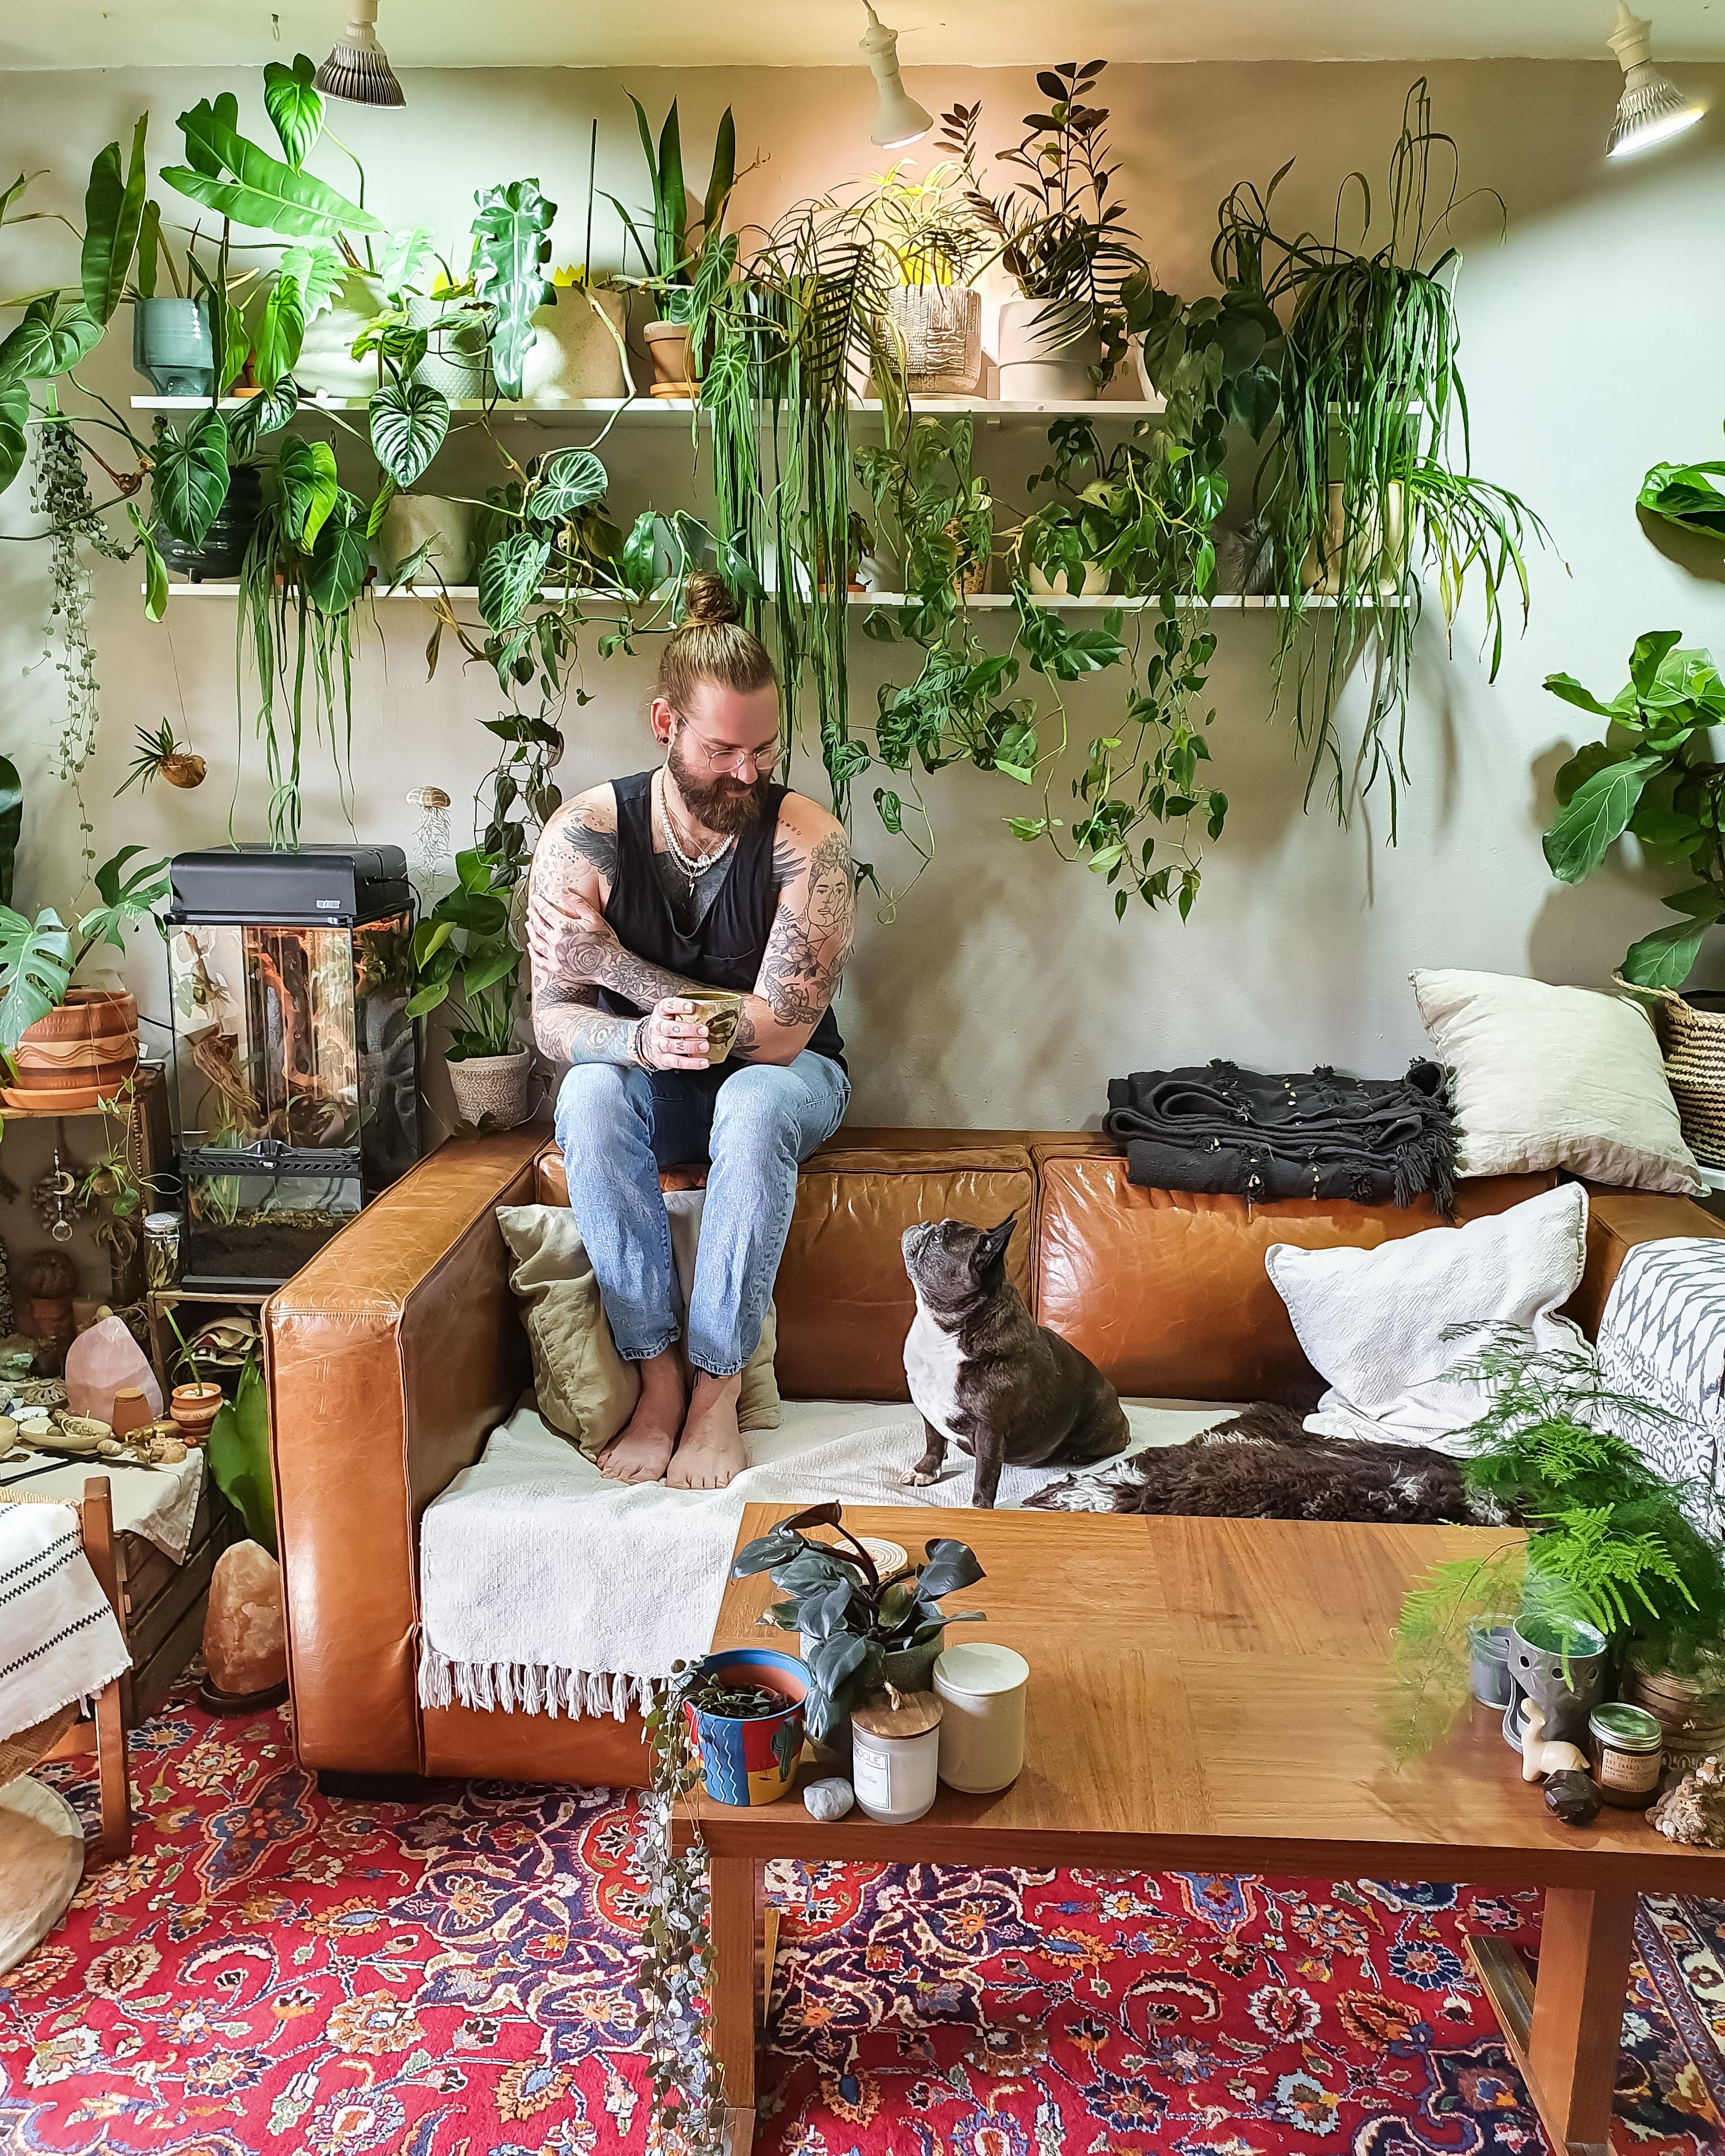 Willkommen im Dschungel 🪴 #Wohnzimmer #Pflanzen #Regal #Couch #couchstyle #boho #hippie #Terrarium #Hund #urbanjungle